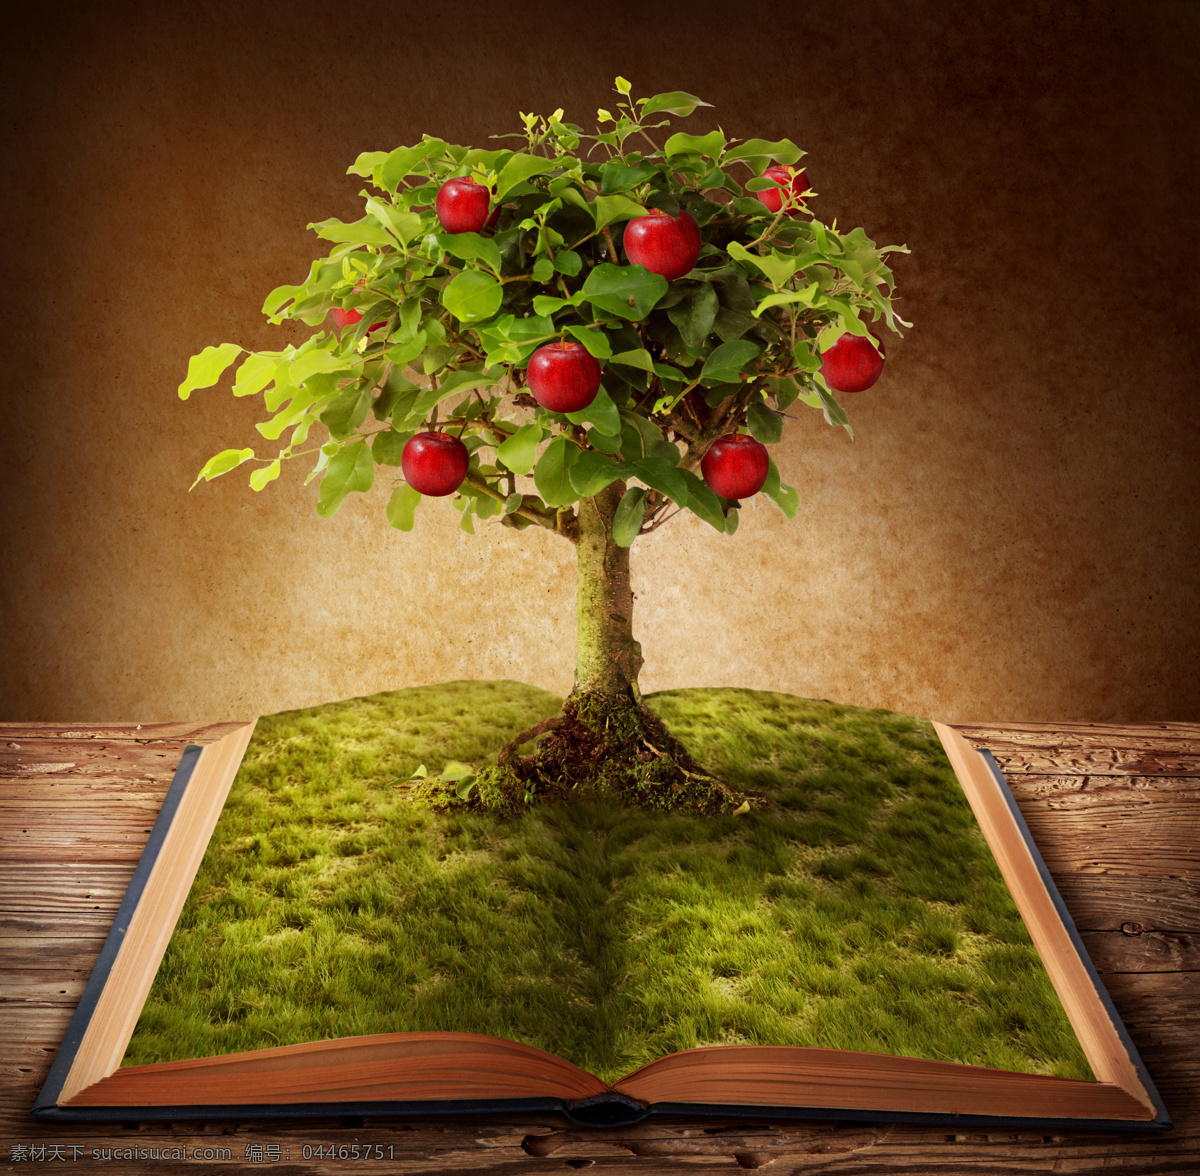 书本与苹果树 书本 书籍 翻开的书 学习 知识 希望 树木 大树 草地 苹果 果树 收获 花草树木 生物世界 黑色